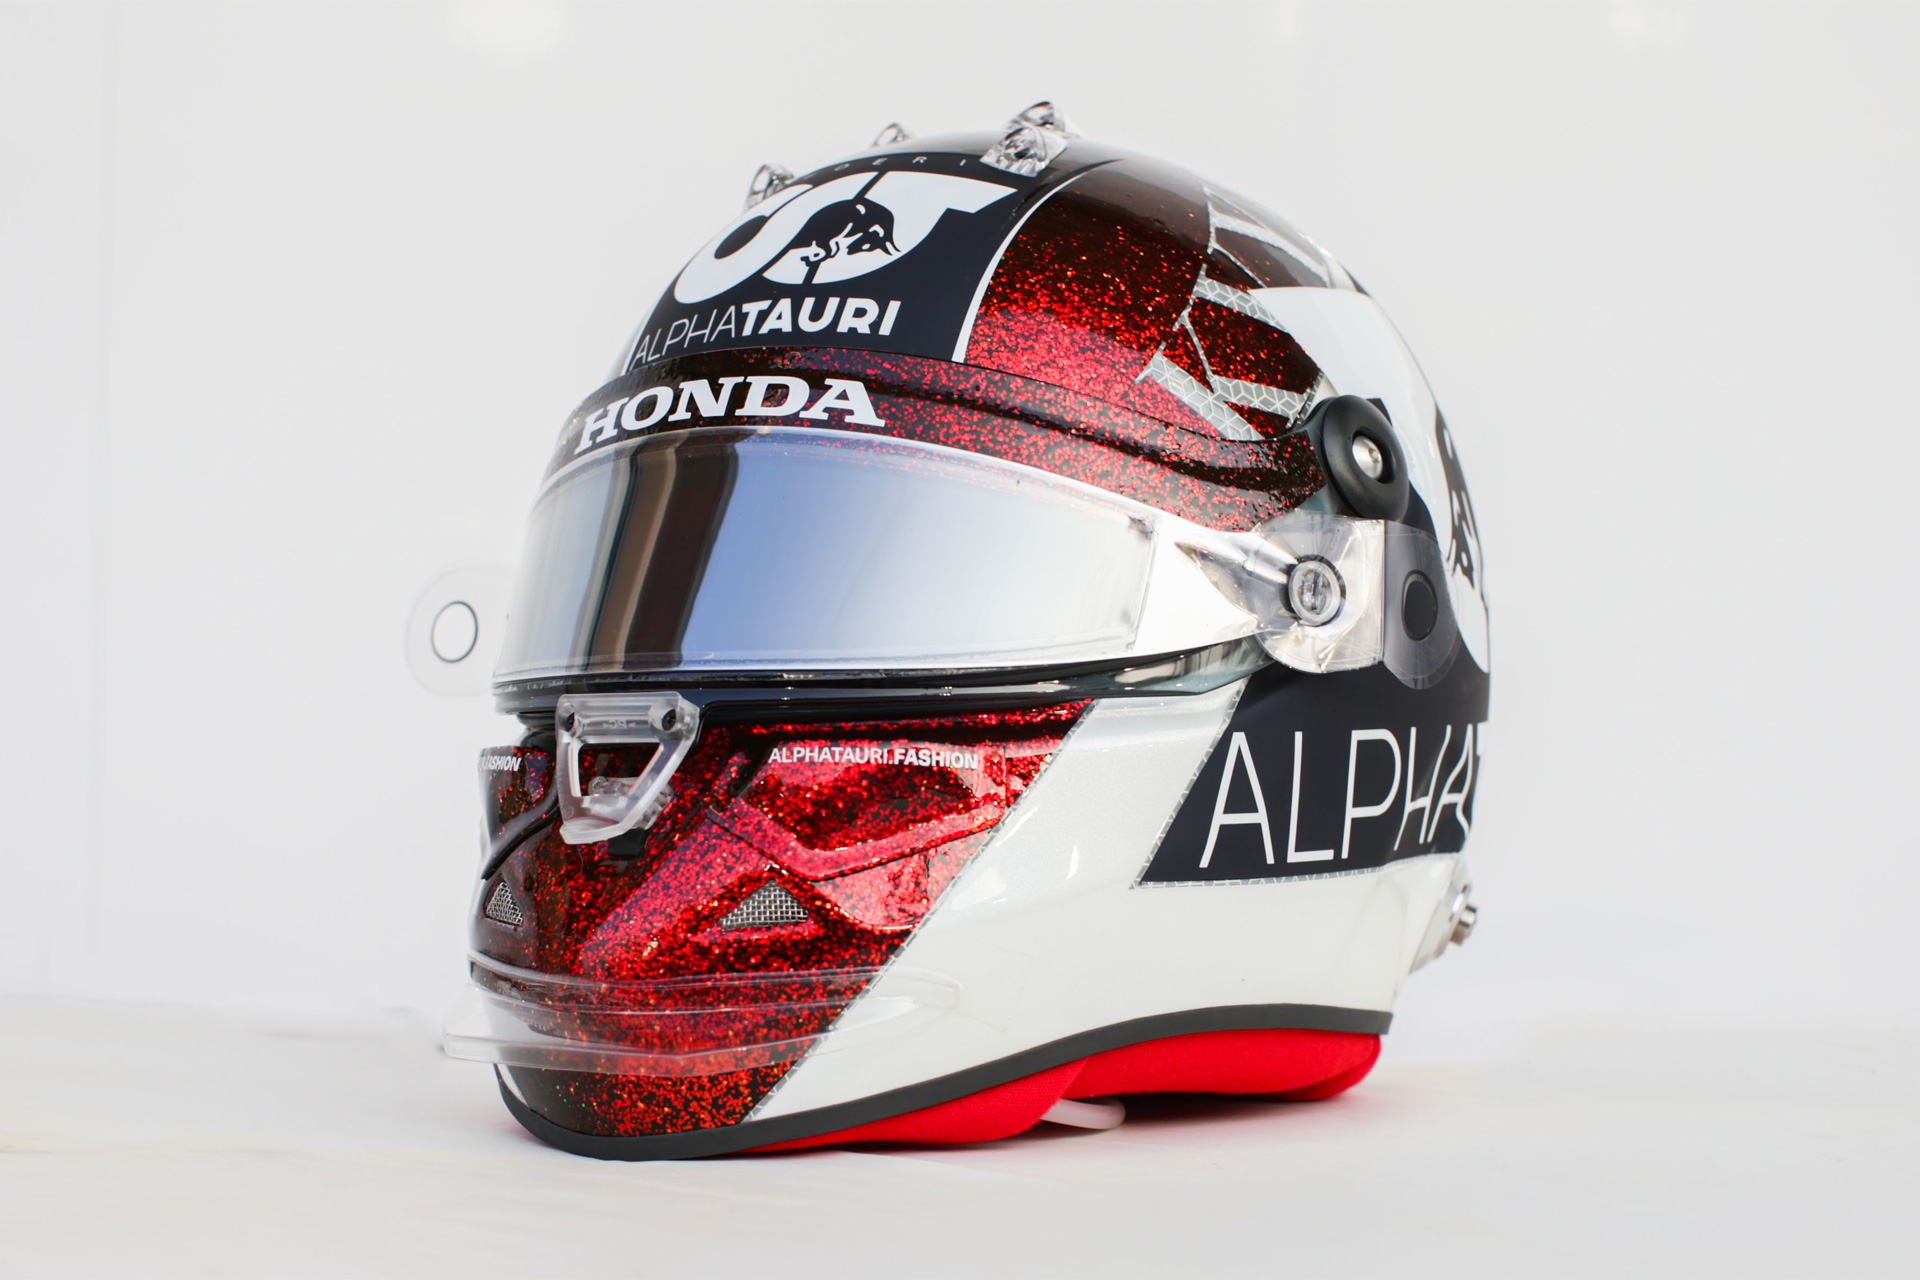 Daniil Kvyat's 2020 Abu Dhabi Grand Prix helmet